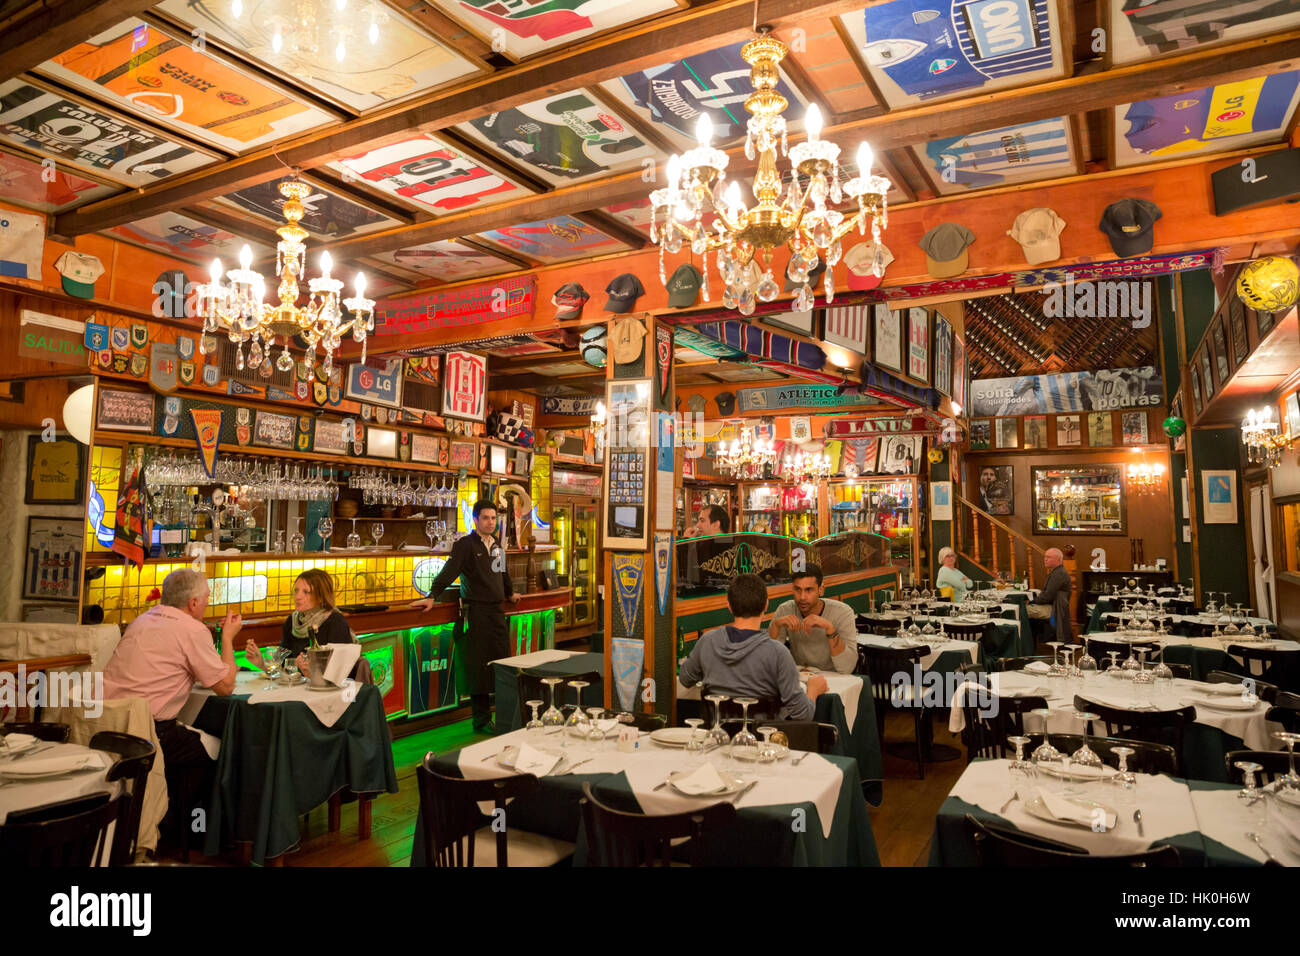 Interior of La Brigada parrilla restaurant, San Telmo, Buenos Aires, Argentina, South America Stock Photo